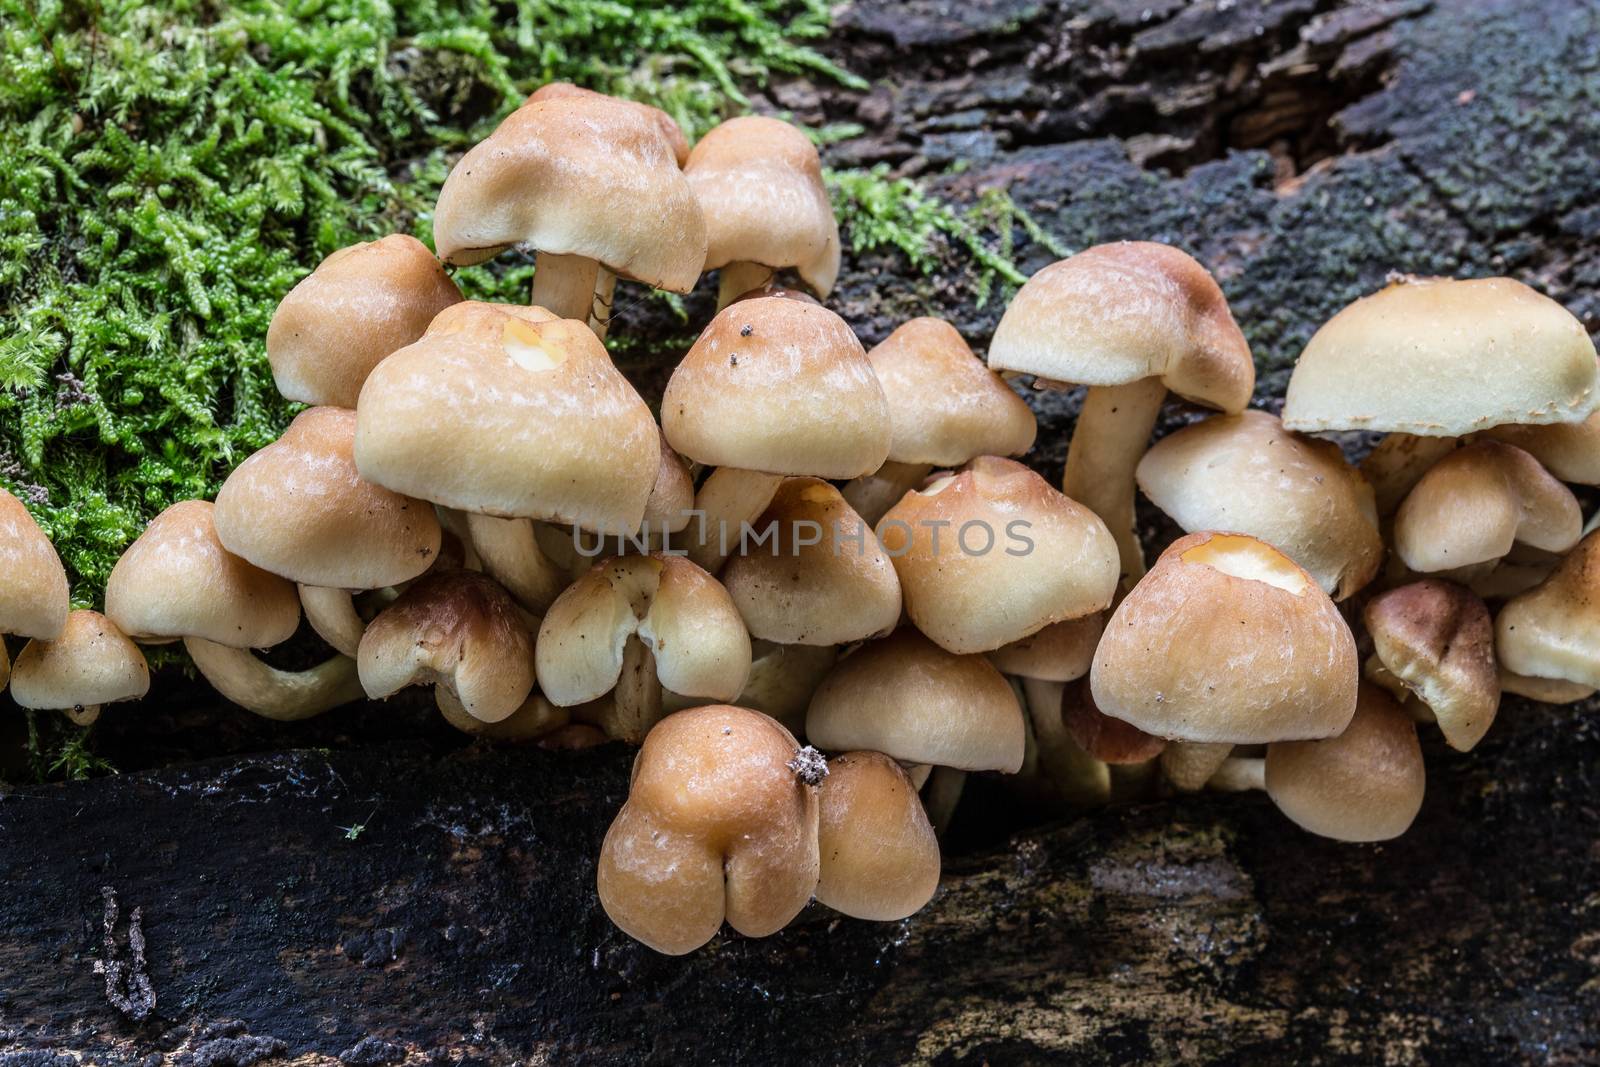 mushroom on dead tree trunk by Dr-Lange